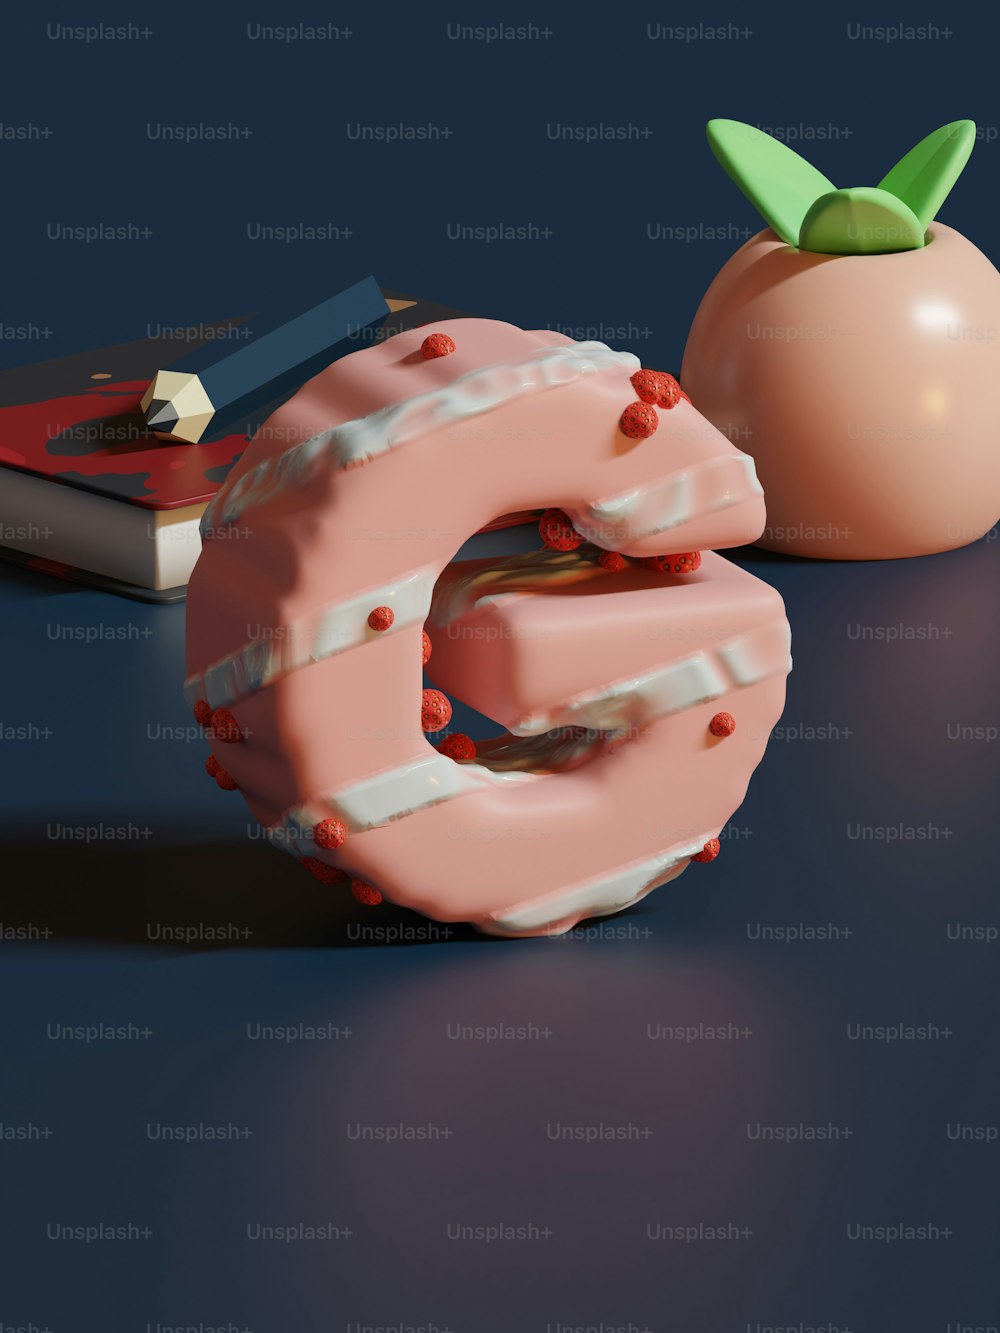 사과 옆에 한 입 베어 물고 있는 도넛